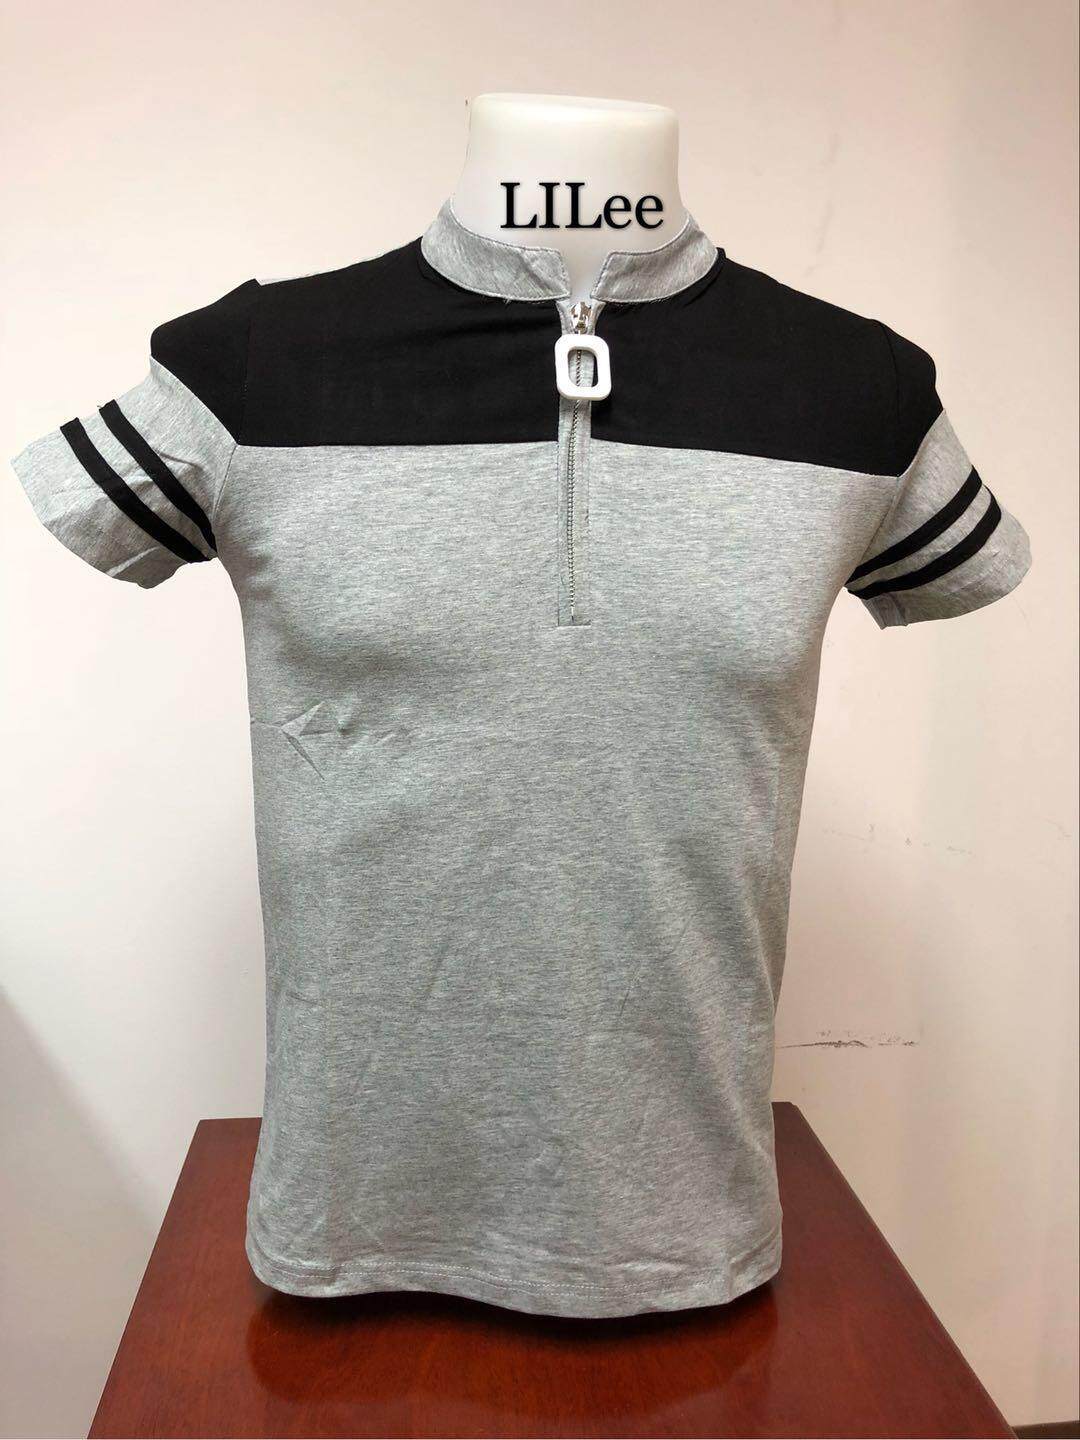 เสื้อยืดแขนสั้น ผู้ชาย LILee คอซิป เป็นเนื้อCOTTON 100% Mens Short Sleeve T-Shirt 5 Colors *New*(LL1014)